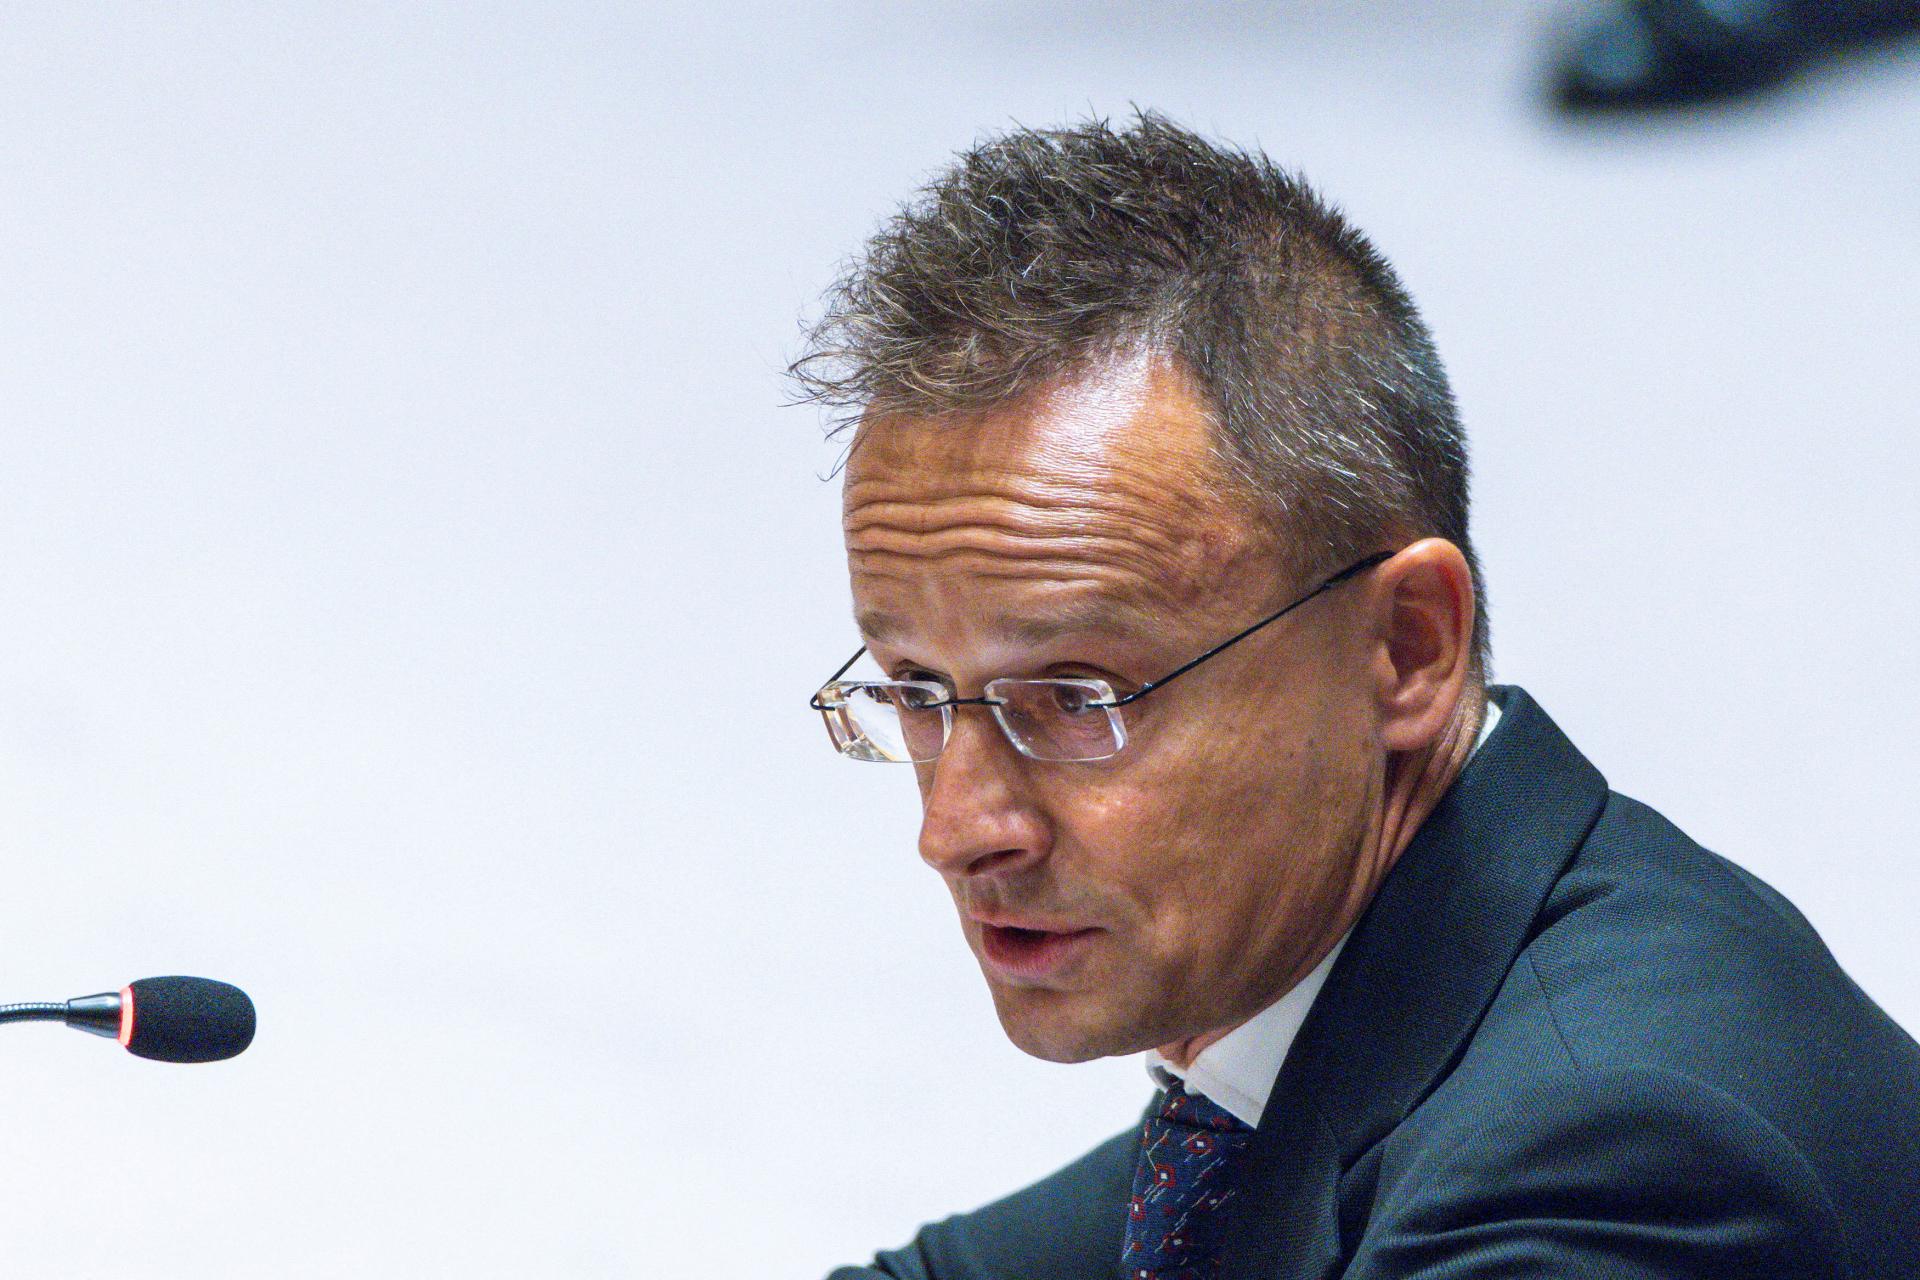 Šéf maďarskej diplomacie Szijjártó rokoval v New Yorku s Lavrovom aj o vojne na Ukrajine